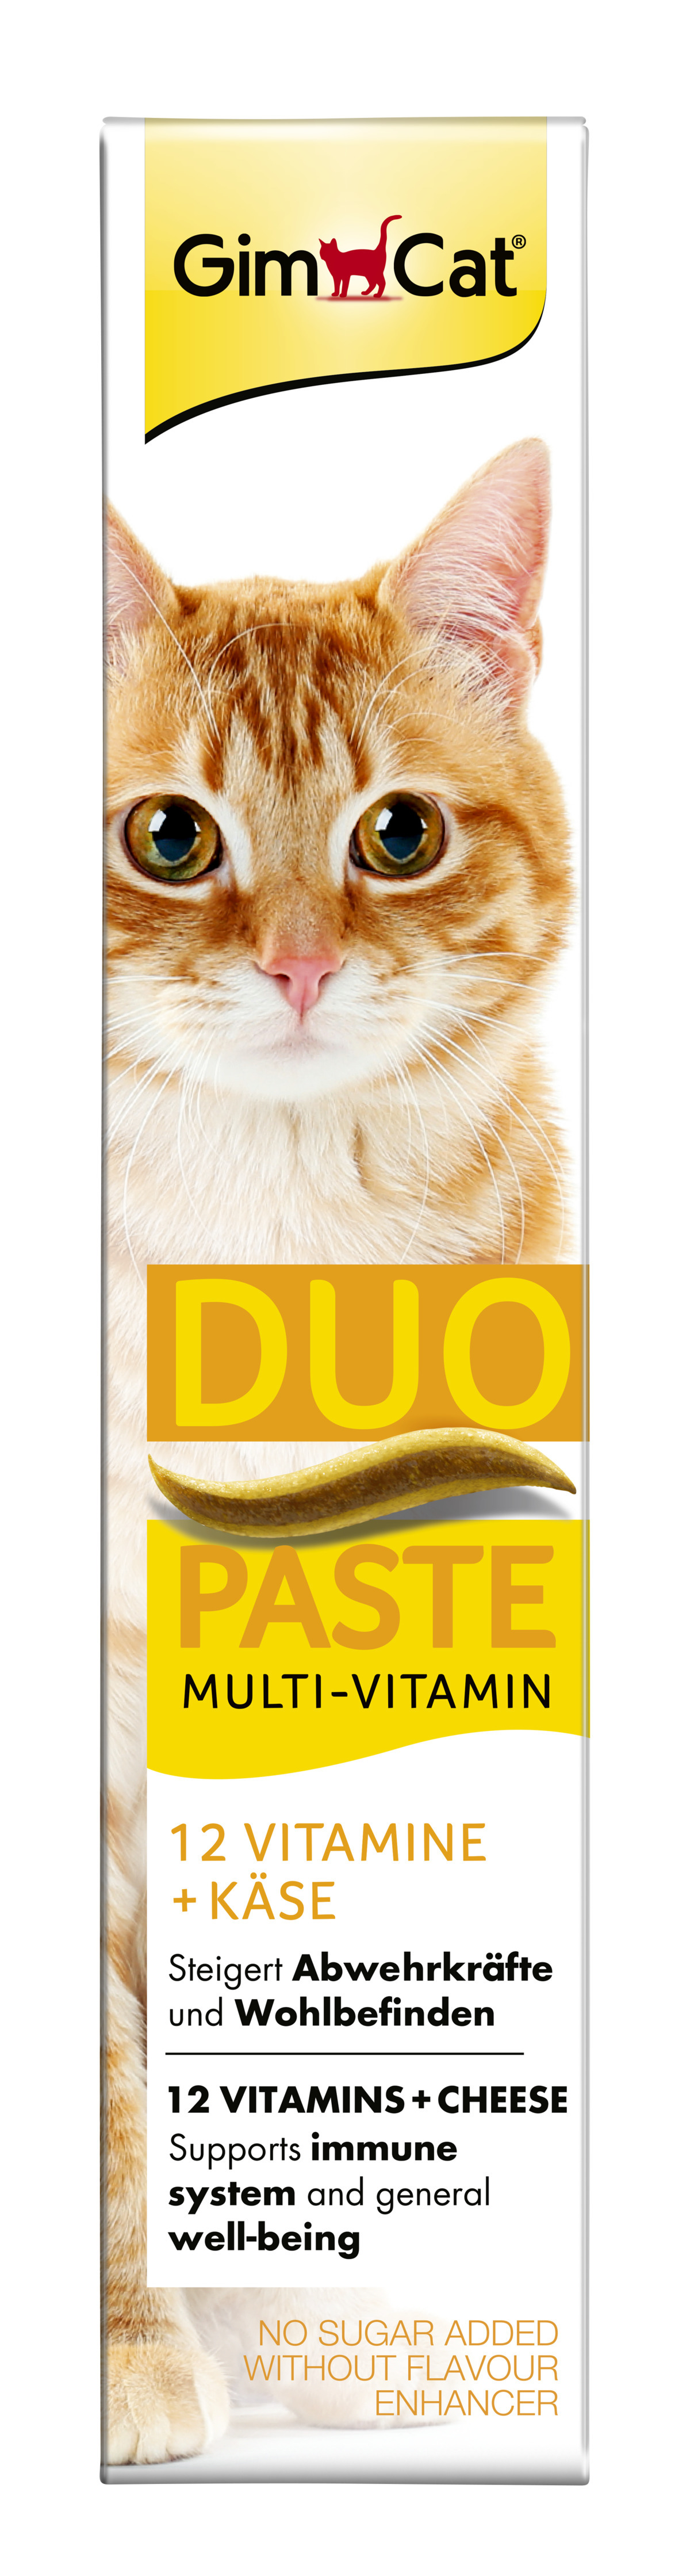 Duo-Paste 2x50g Multi-Vitamin Käse + 12 Vitamine